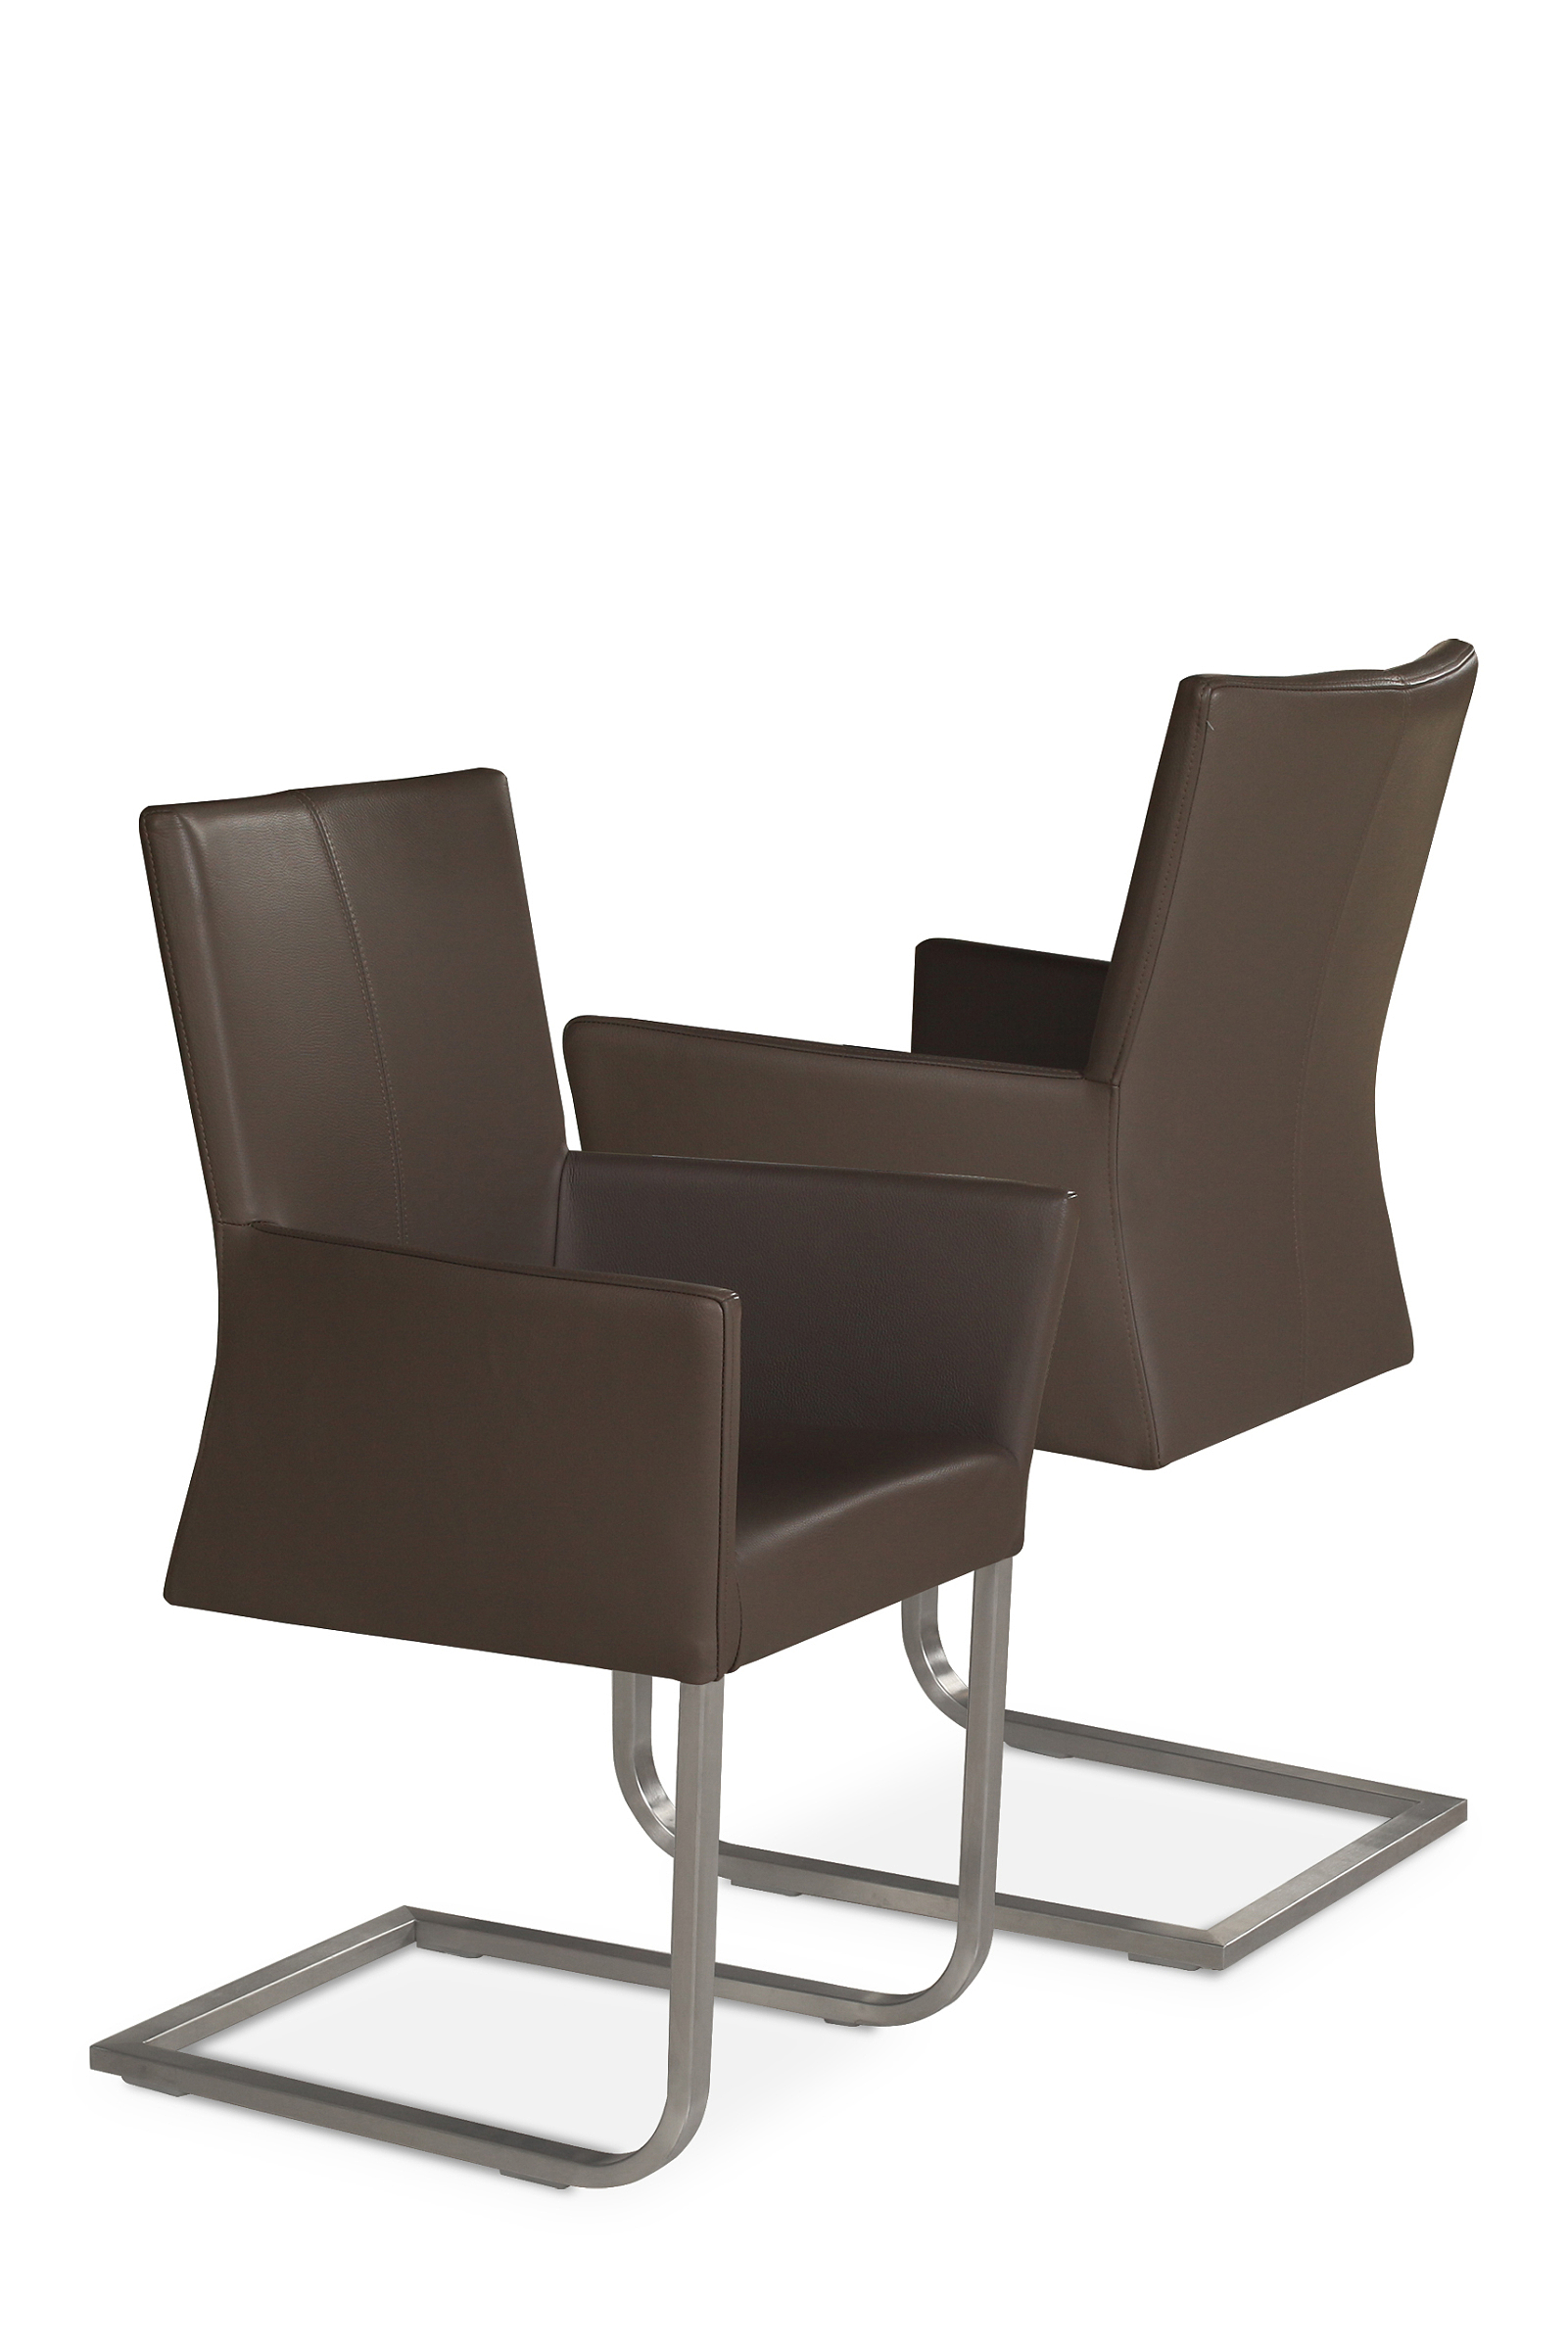 Skip4 krzesła nowoczesne do salonu jadalni w stylu modern industrial